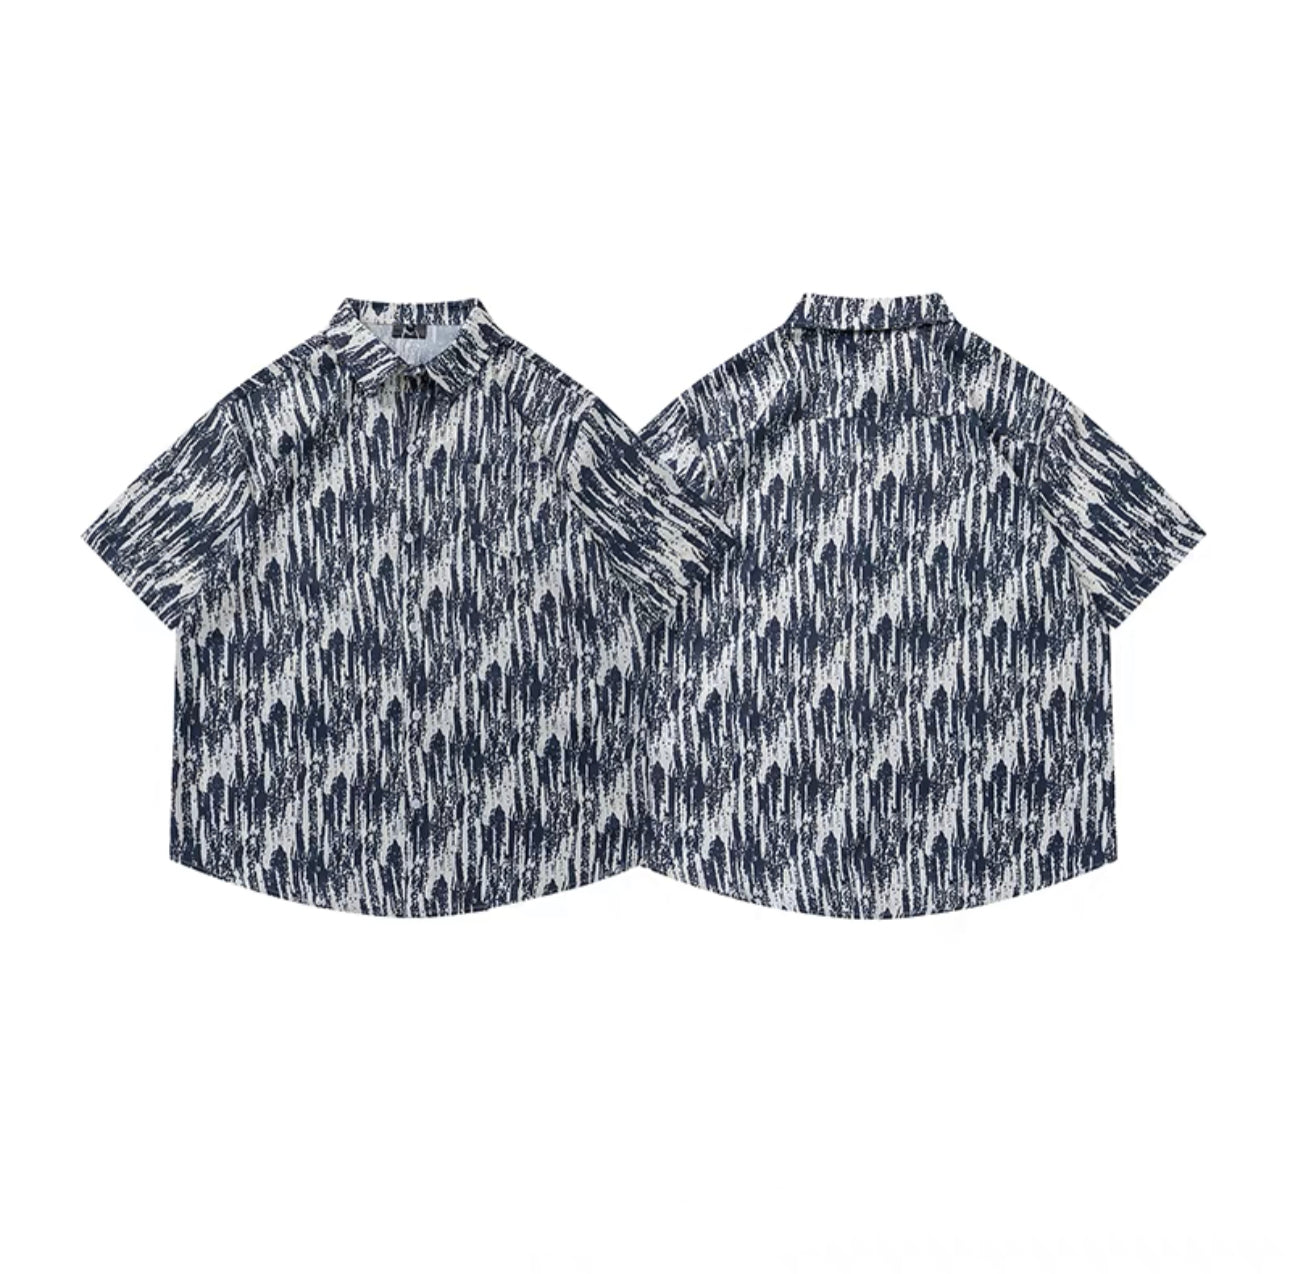 Pattern printed shirt